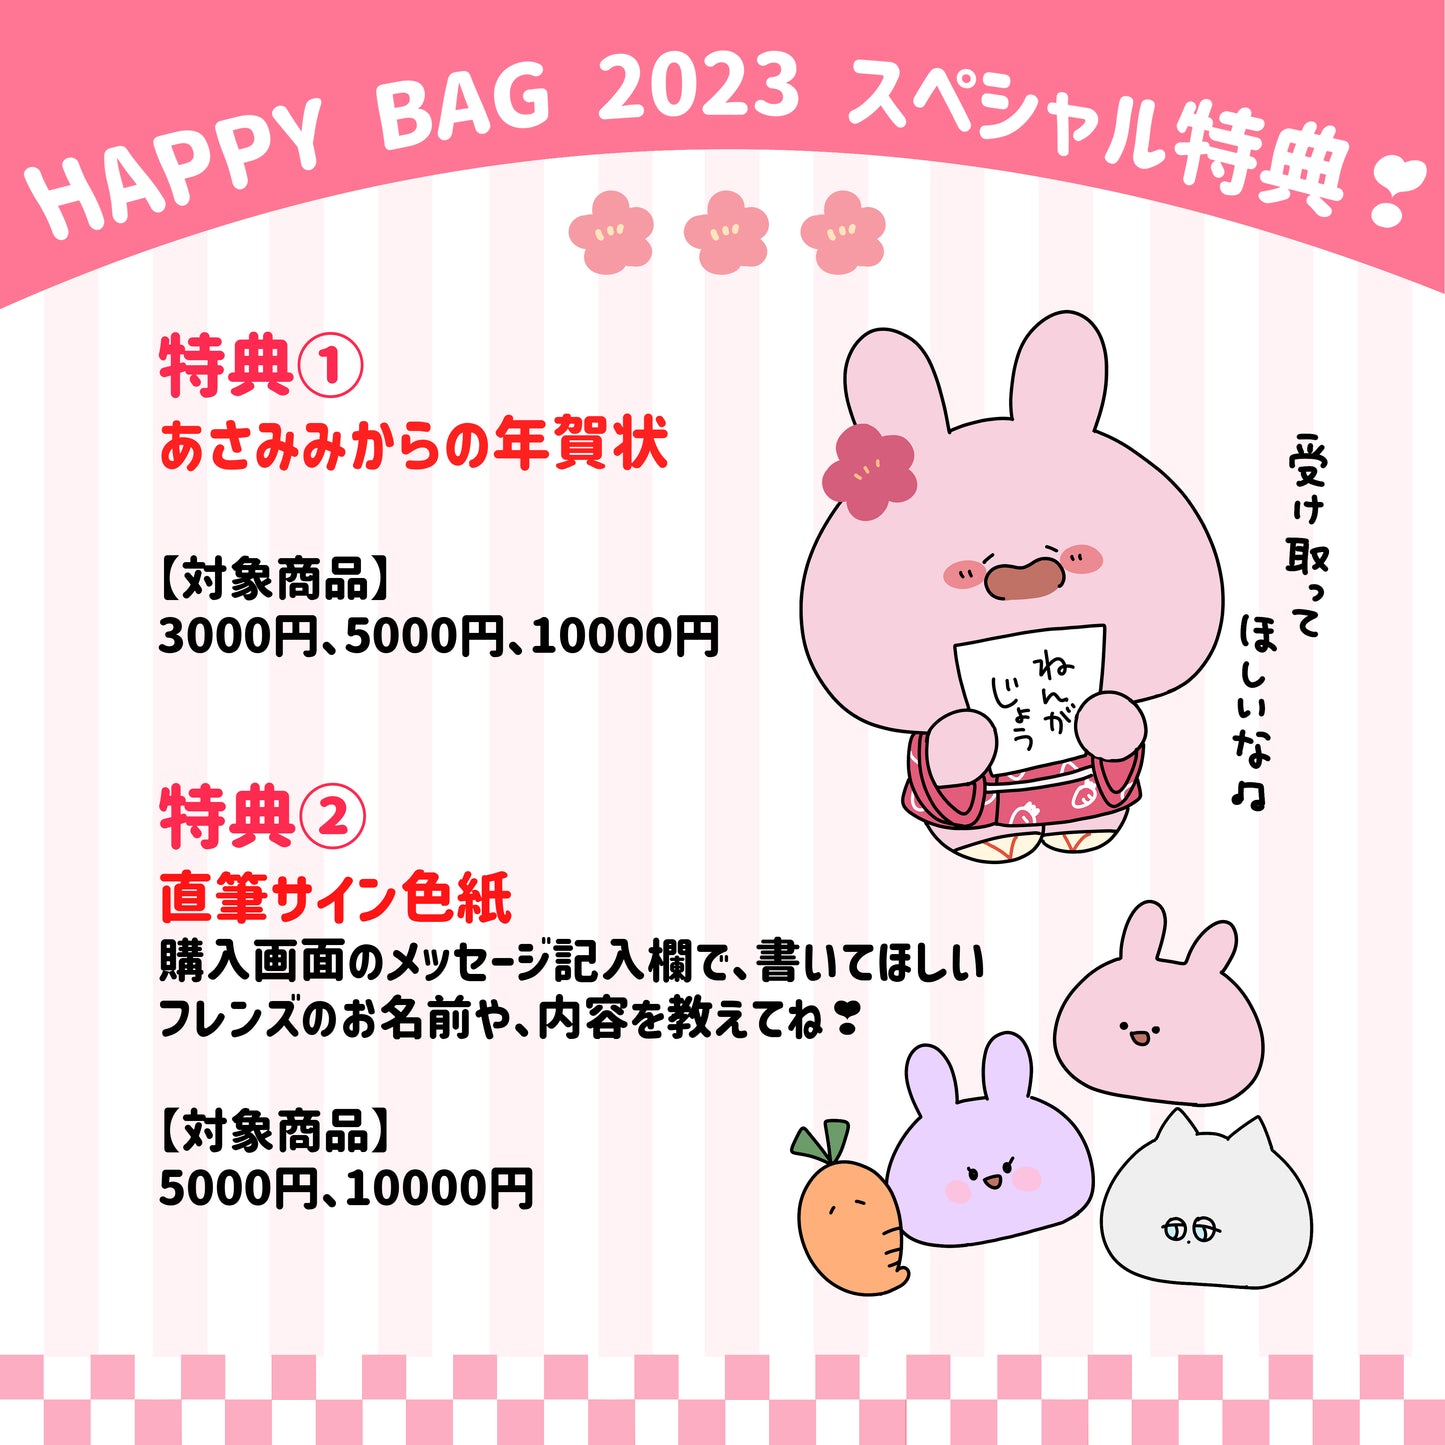 【あさみみちゃん】ASAMIMI HAPPY BAG （¥5,000）【数量限定予約販売】